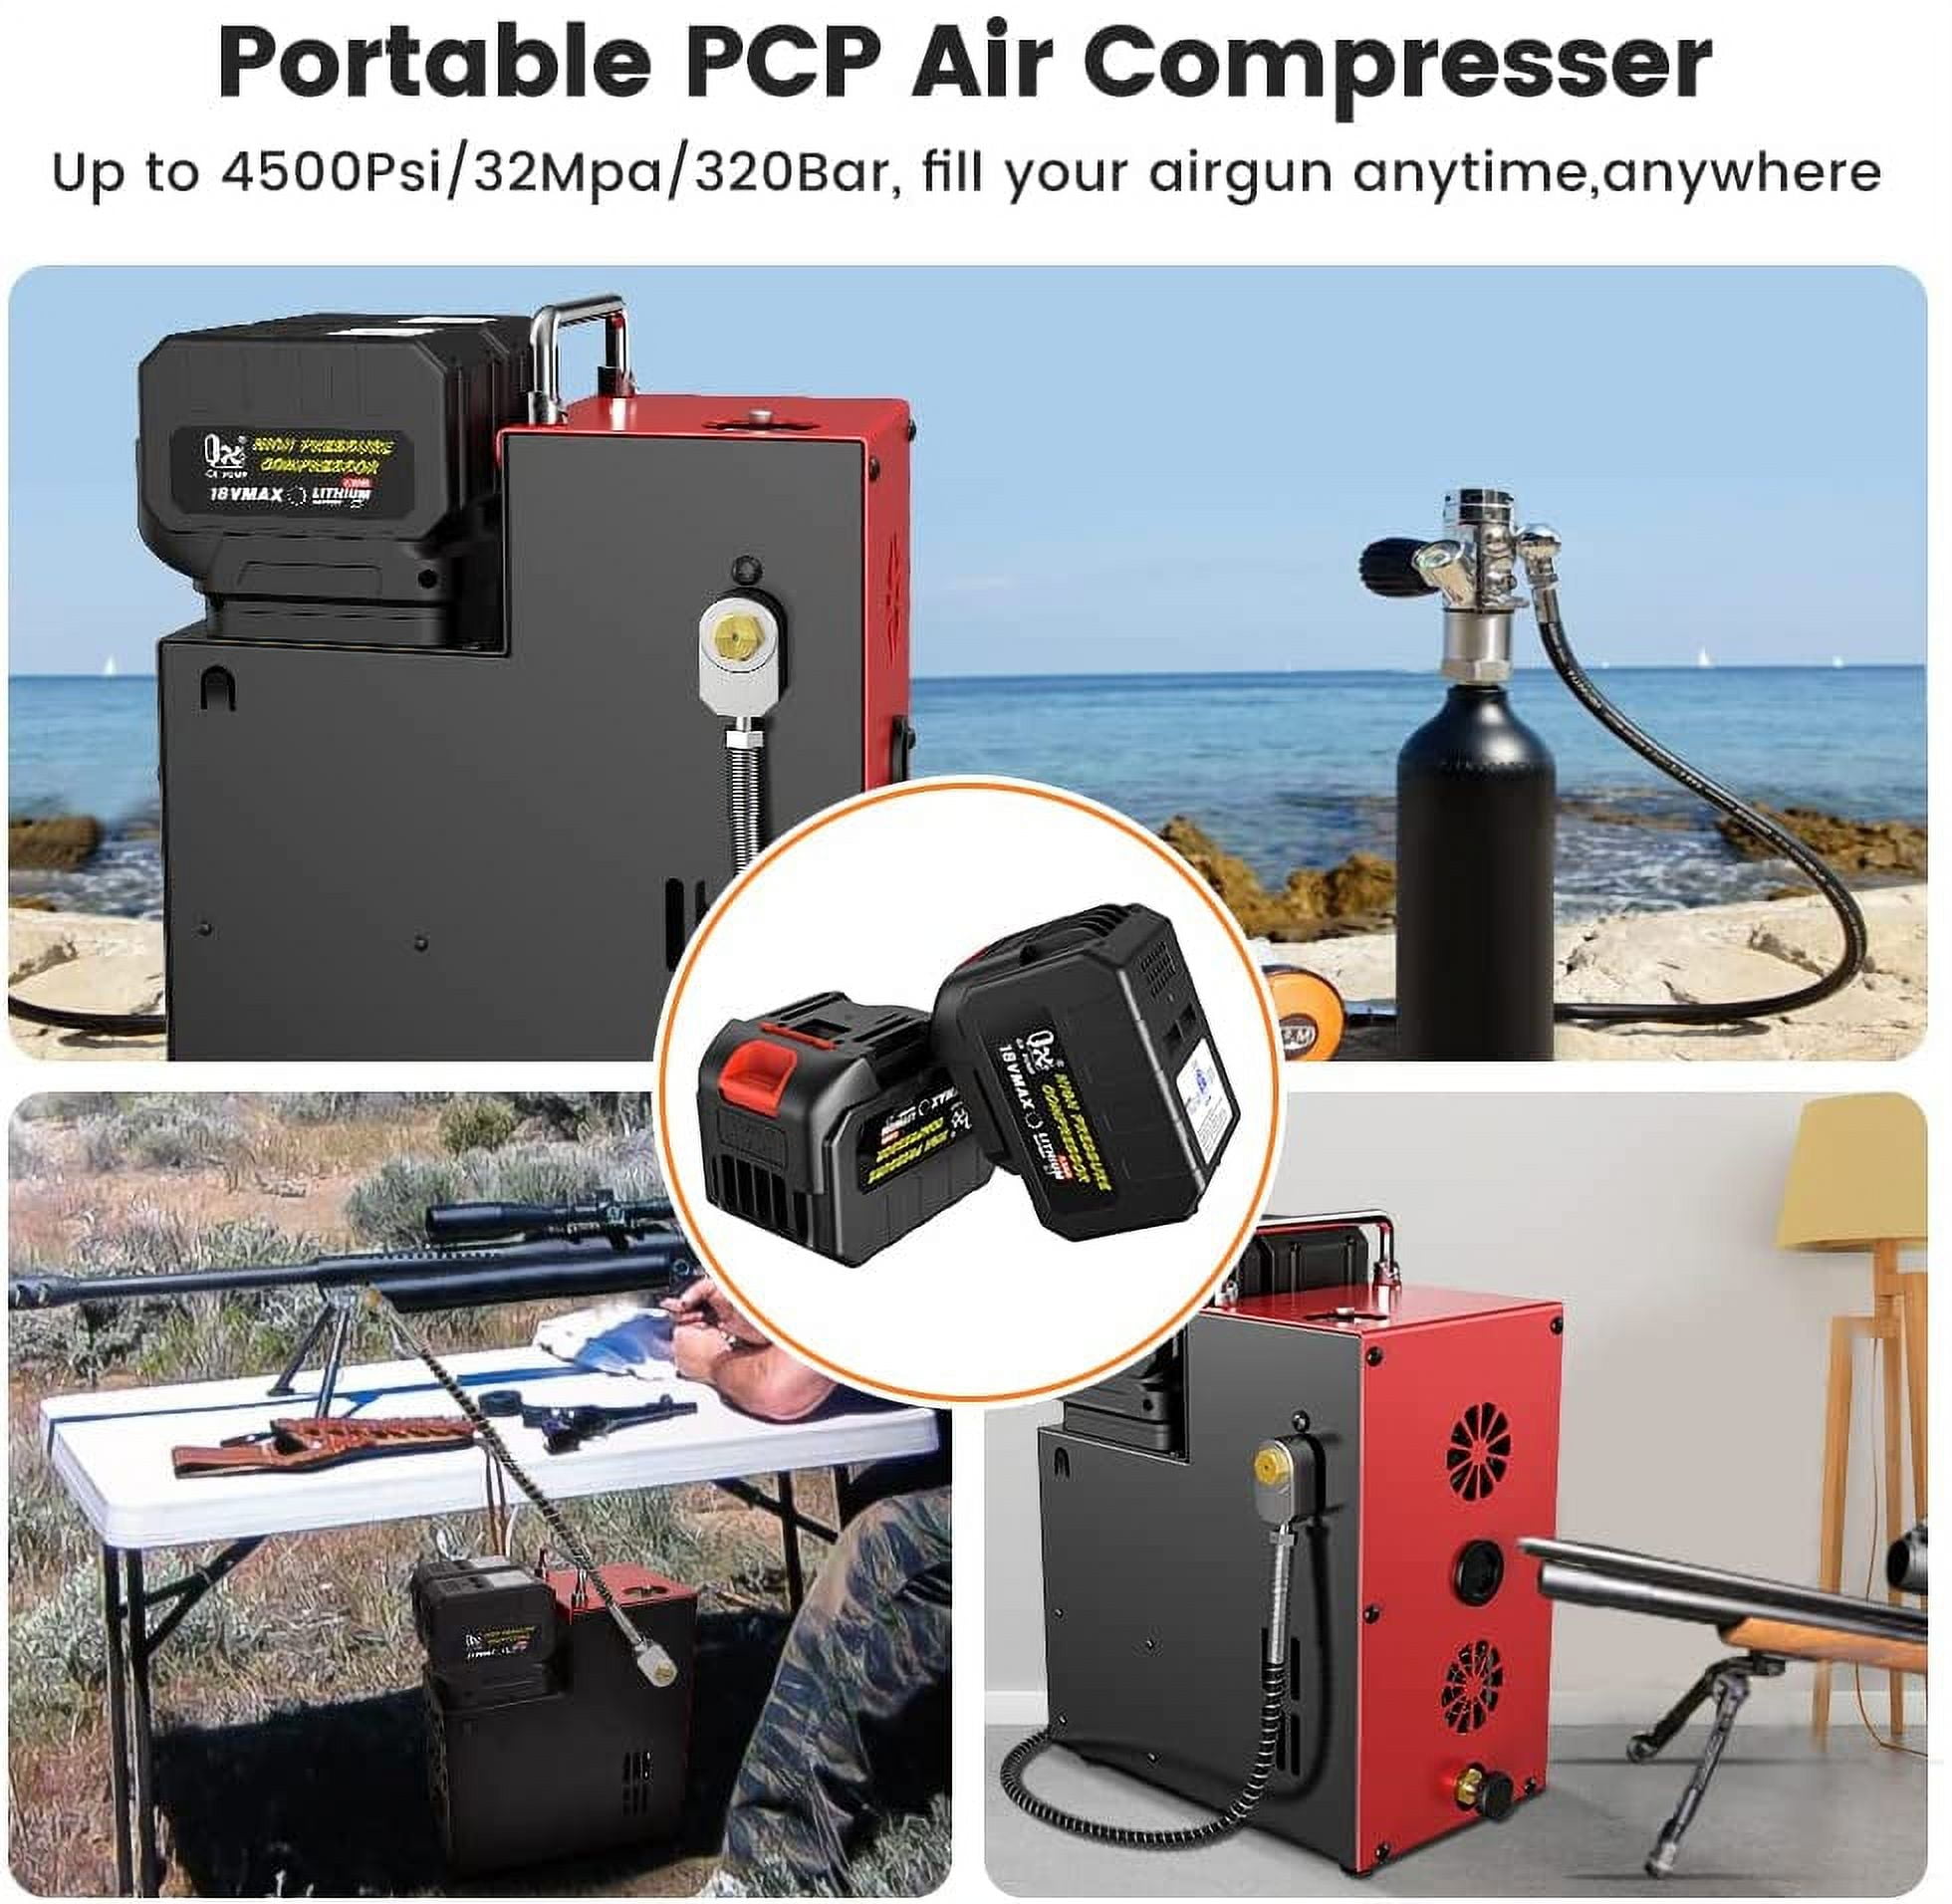 GX pump E-L2 Compresseur d'air PCP sans fil portable 18 V, 4500 psi/30 –  GXPUMP